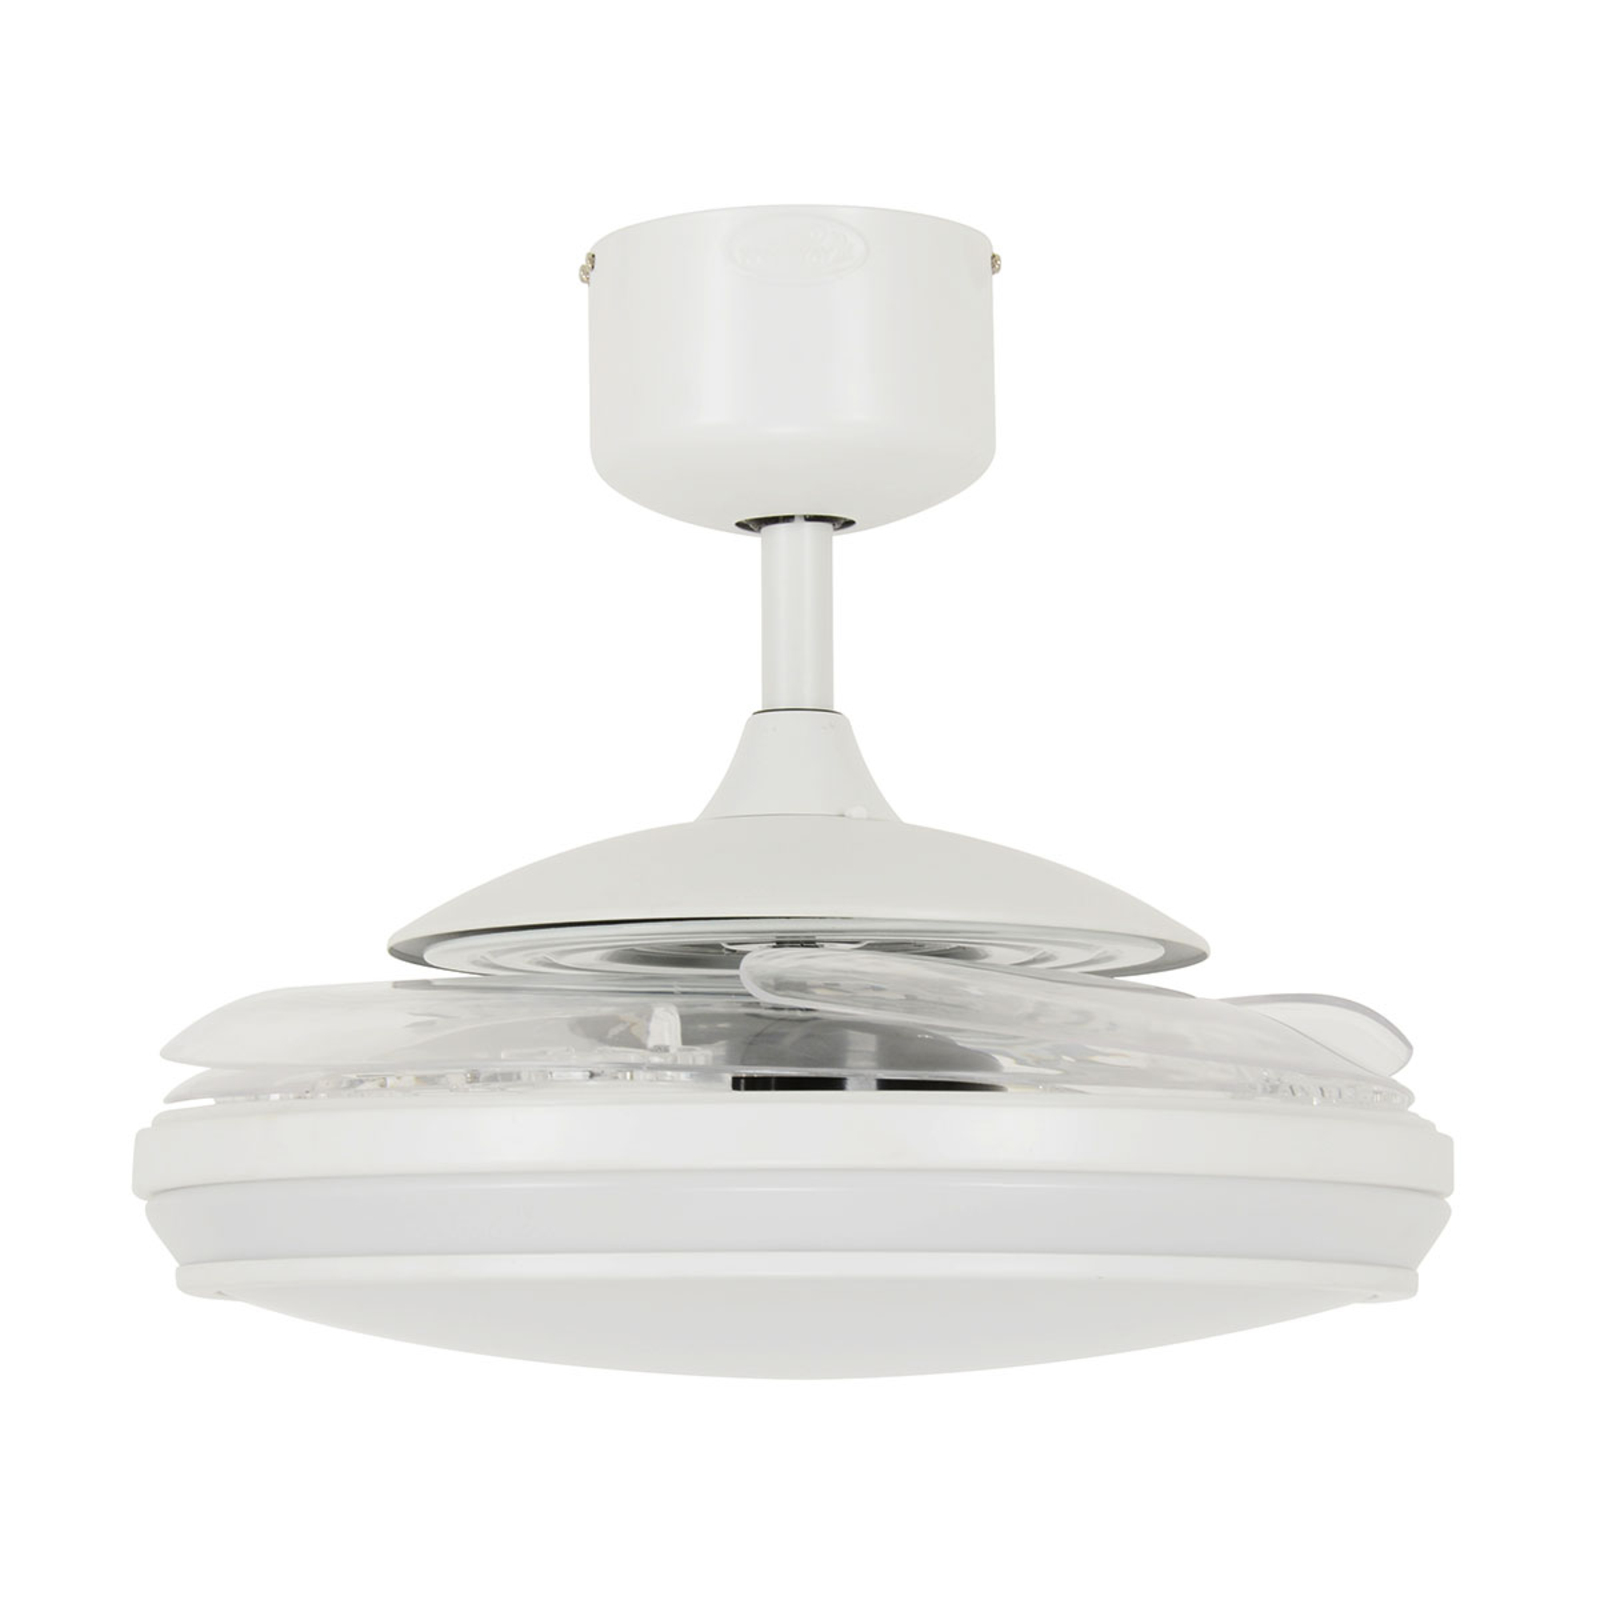 Beacon LED ceiling fan Fanaway Evo 1 white 121 cm quiet